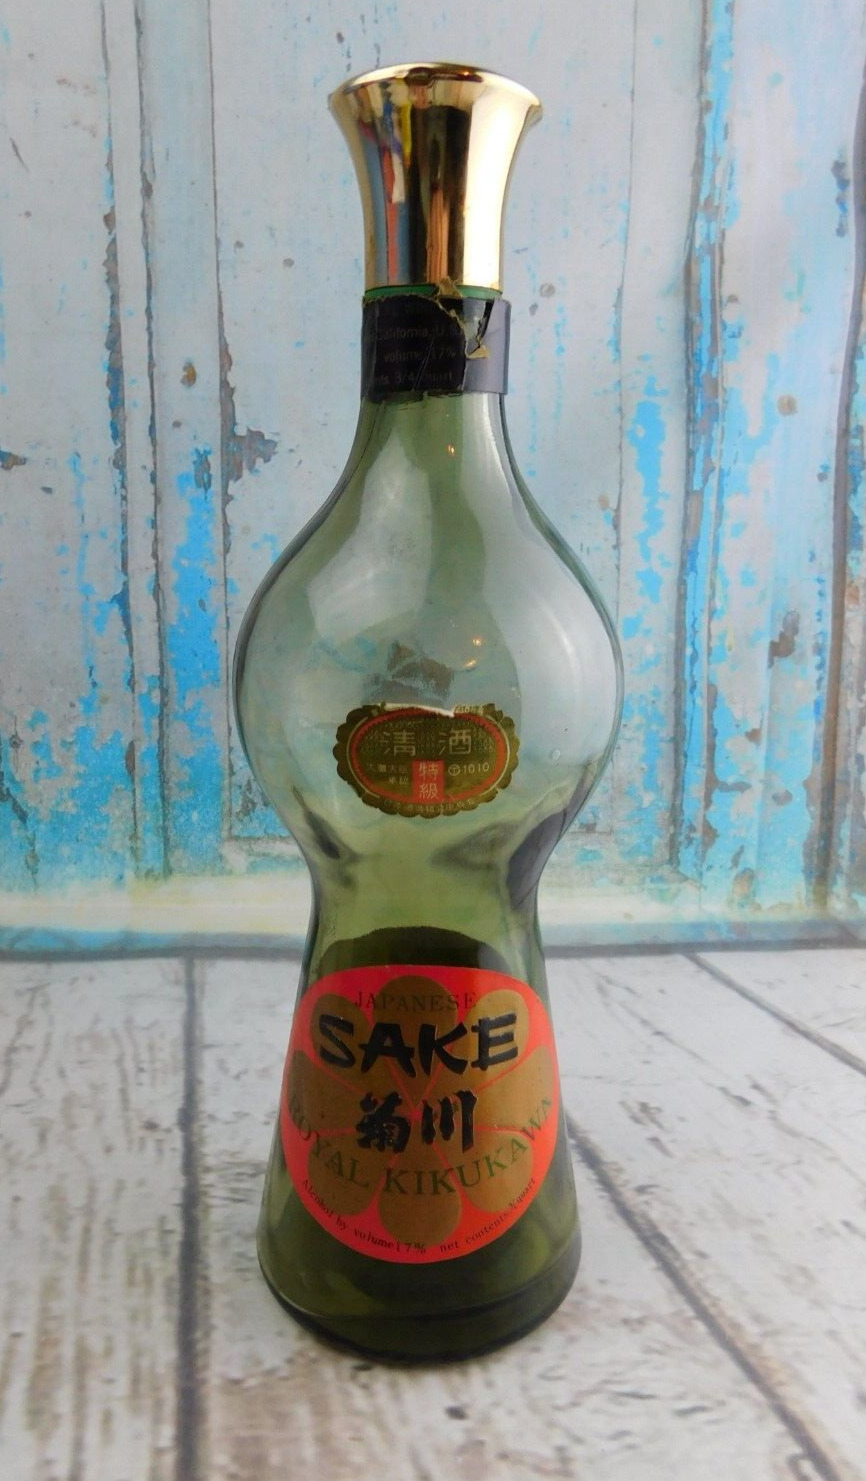 Vintage Japanese Sake Royal Kikukawa Bottle Decanter 3/4 Quart (EMPTY)